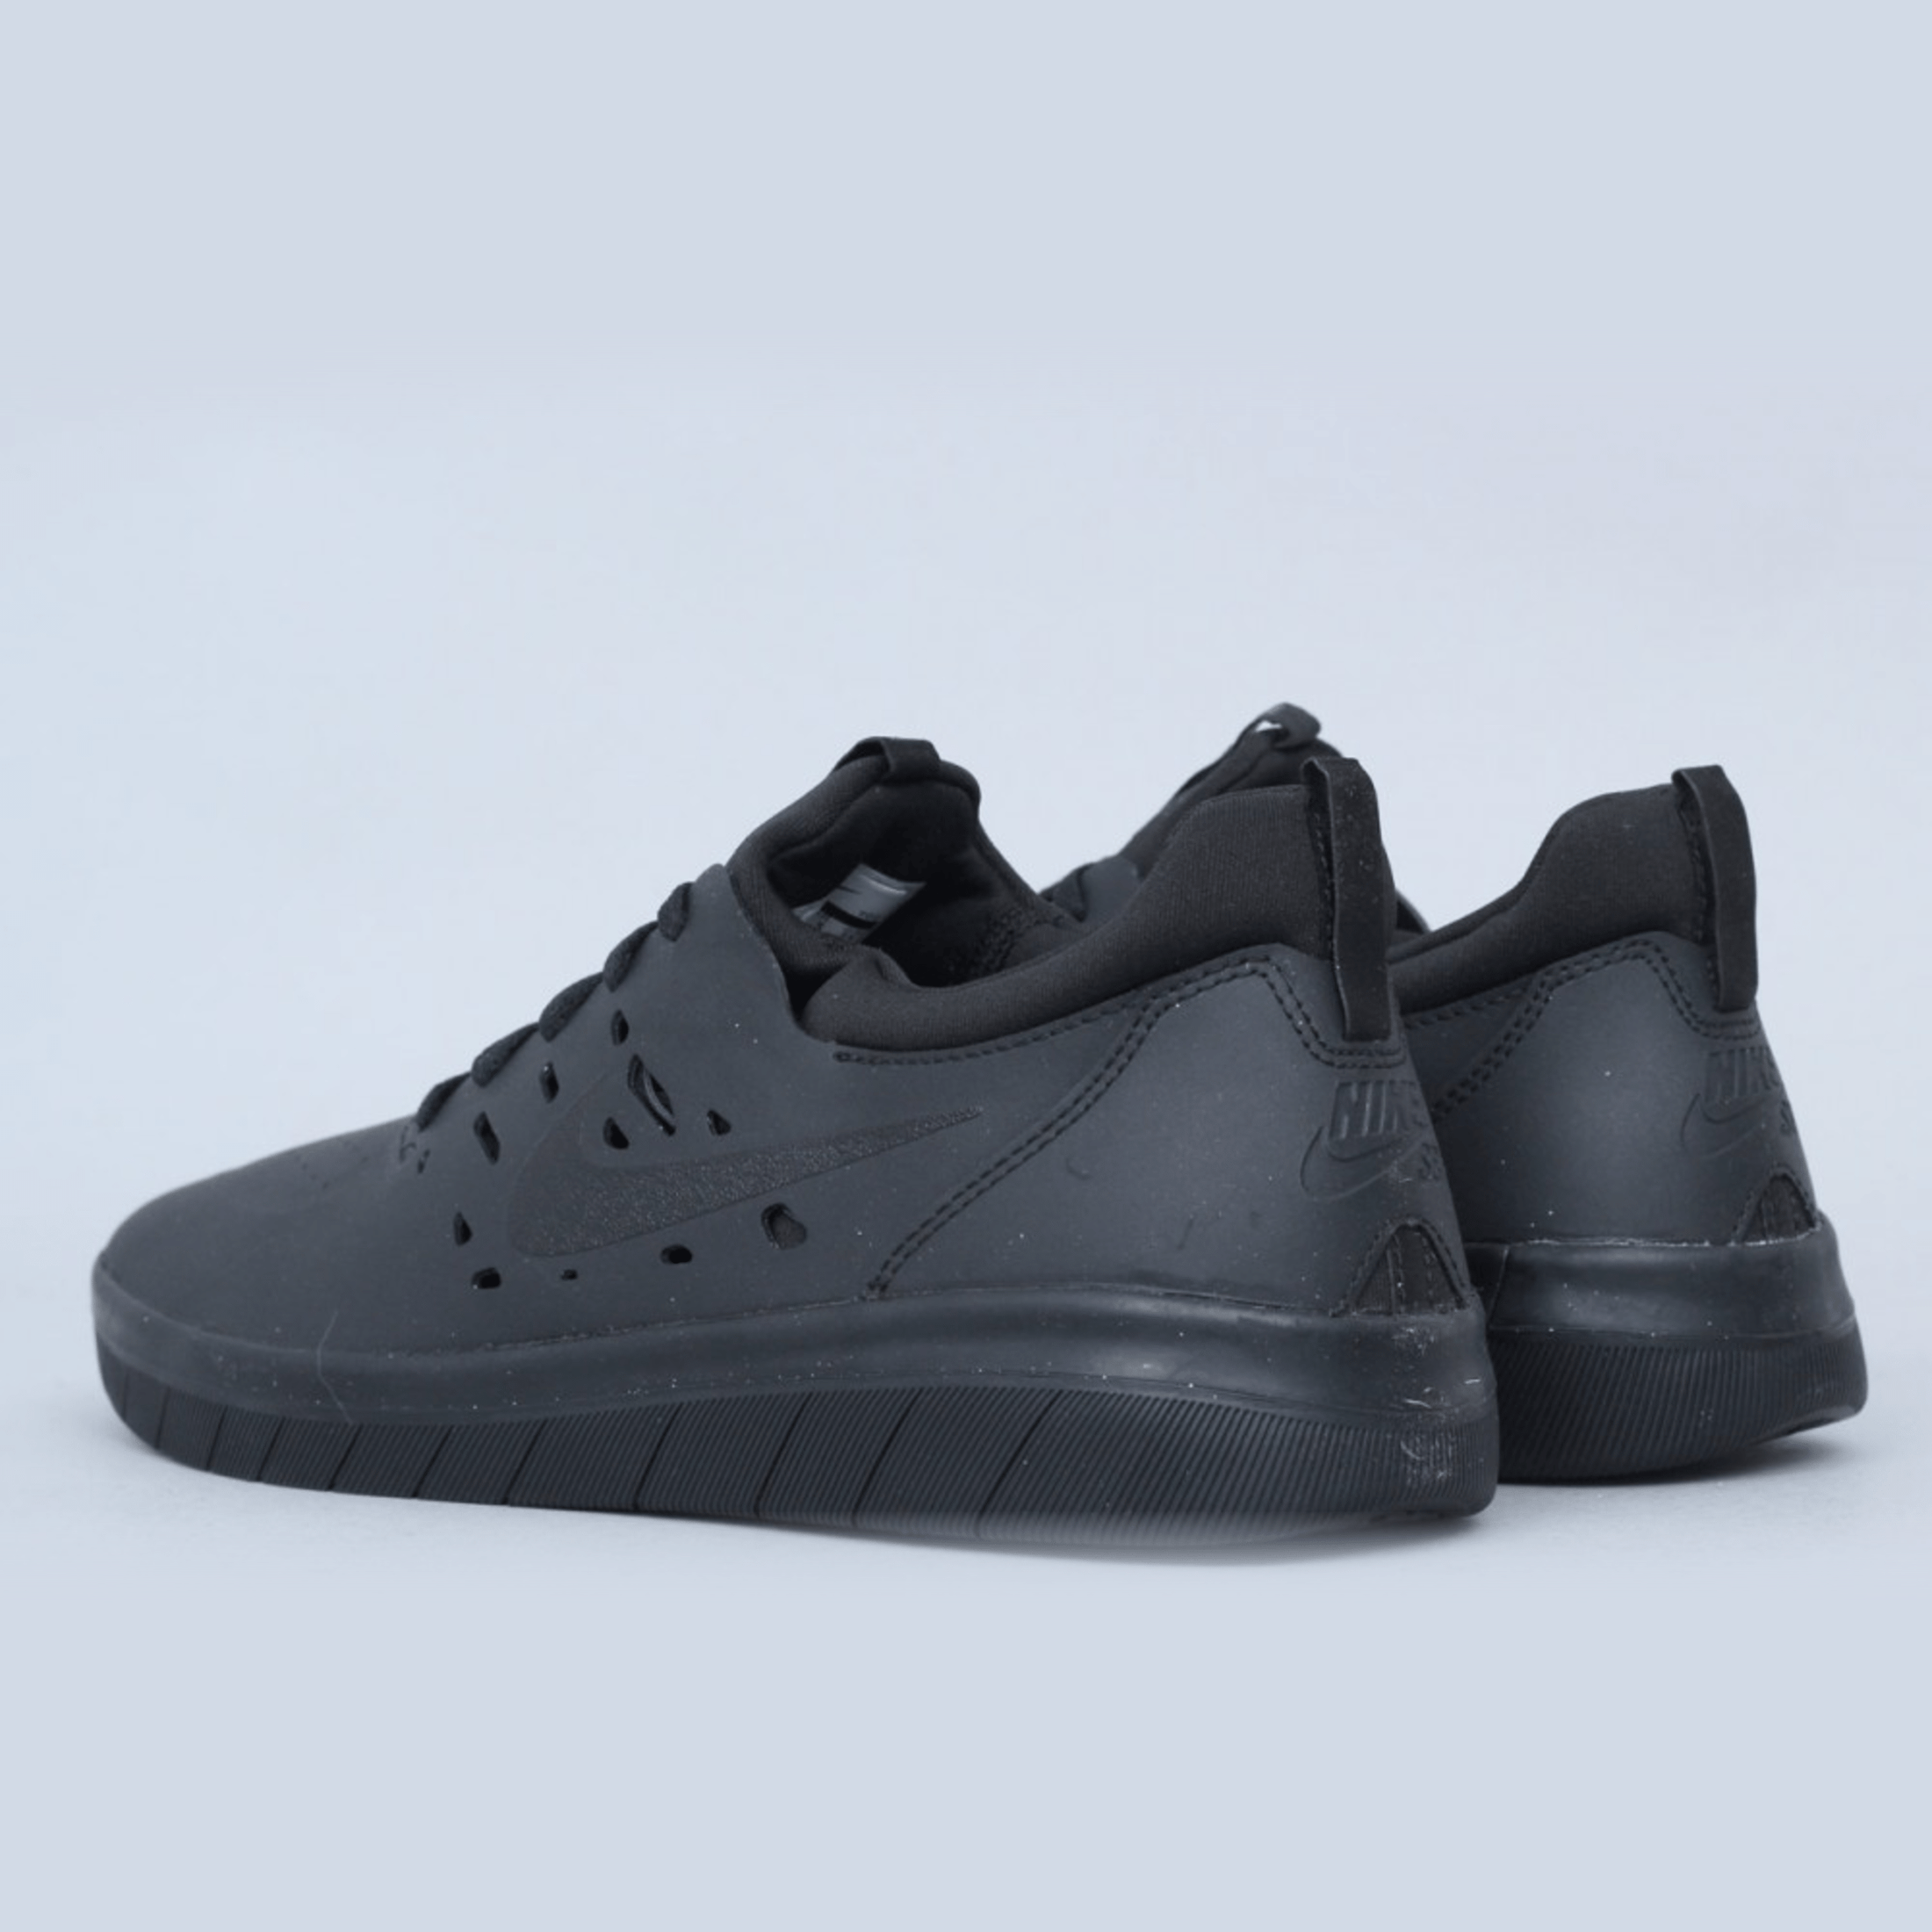 Nike SB Nyjah Free Shoes Black / Black - Black